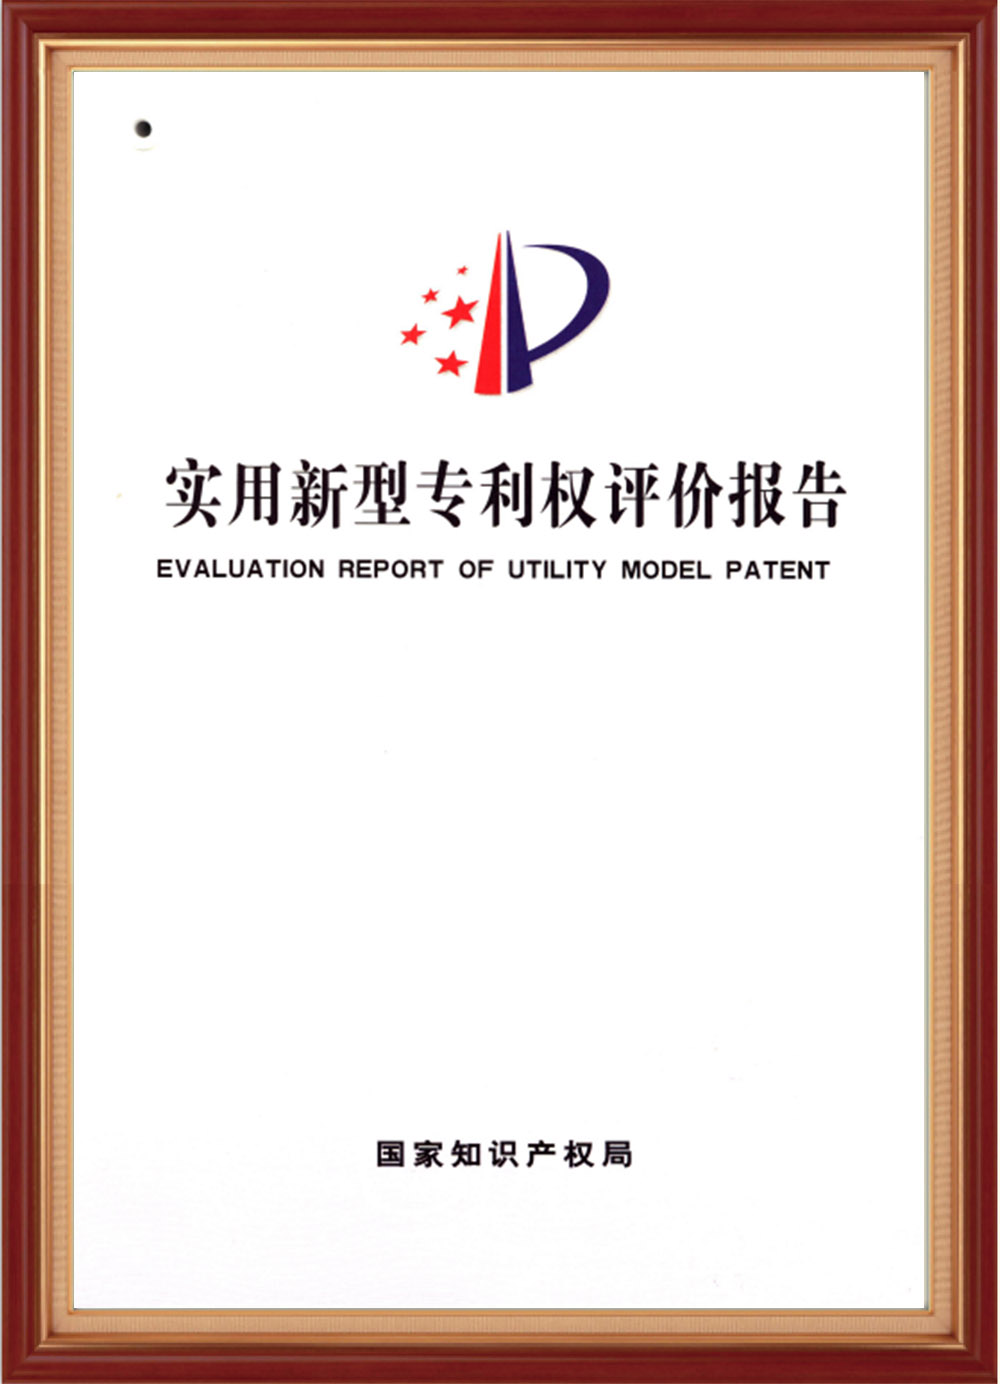 certificate-01 (9)